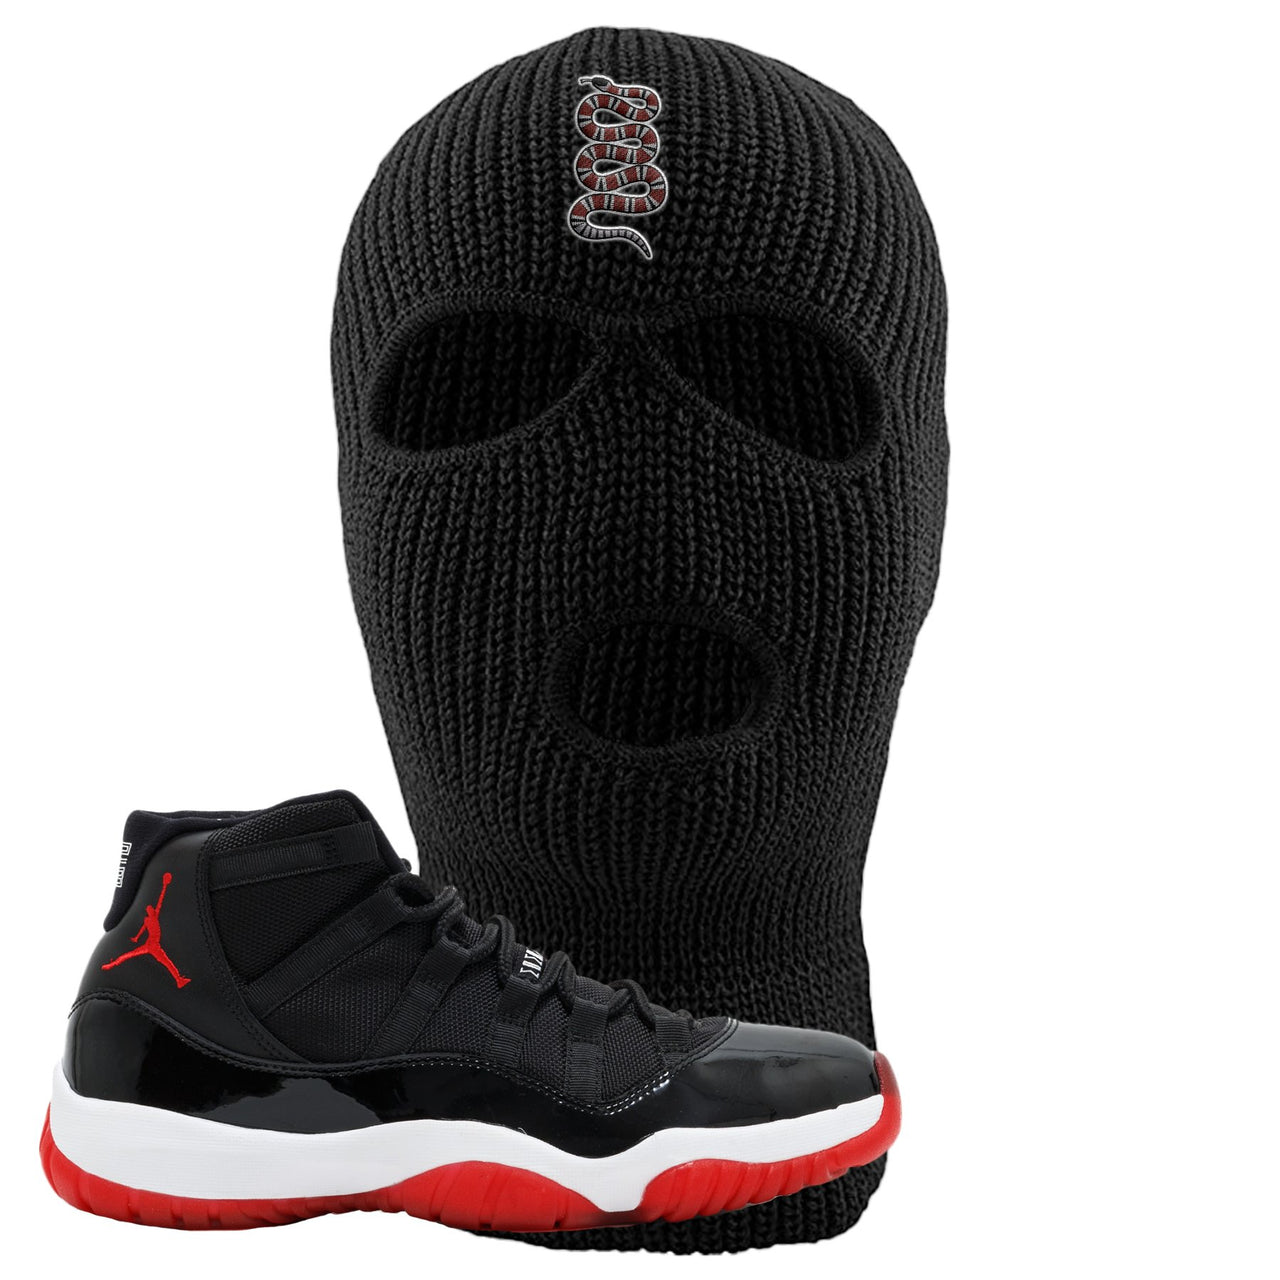 Jordan 11 Bred Coiled Snake Black Sneaker Hook Up Ski Mask